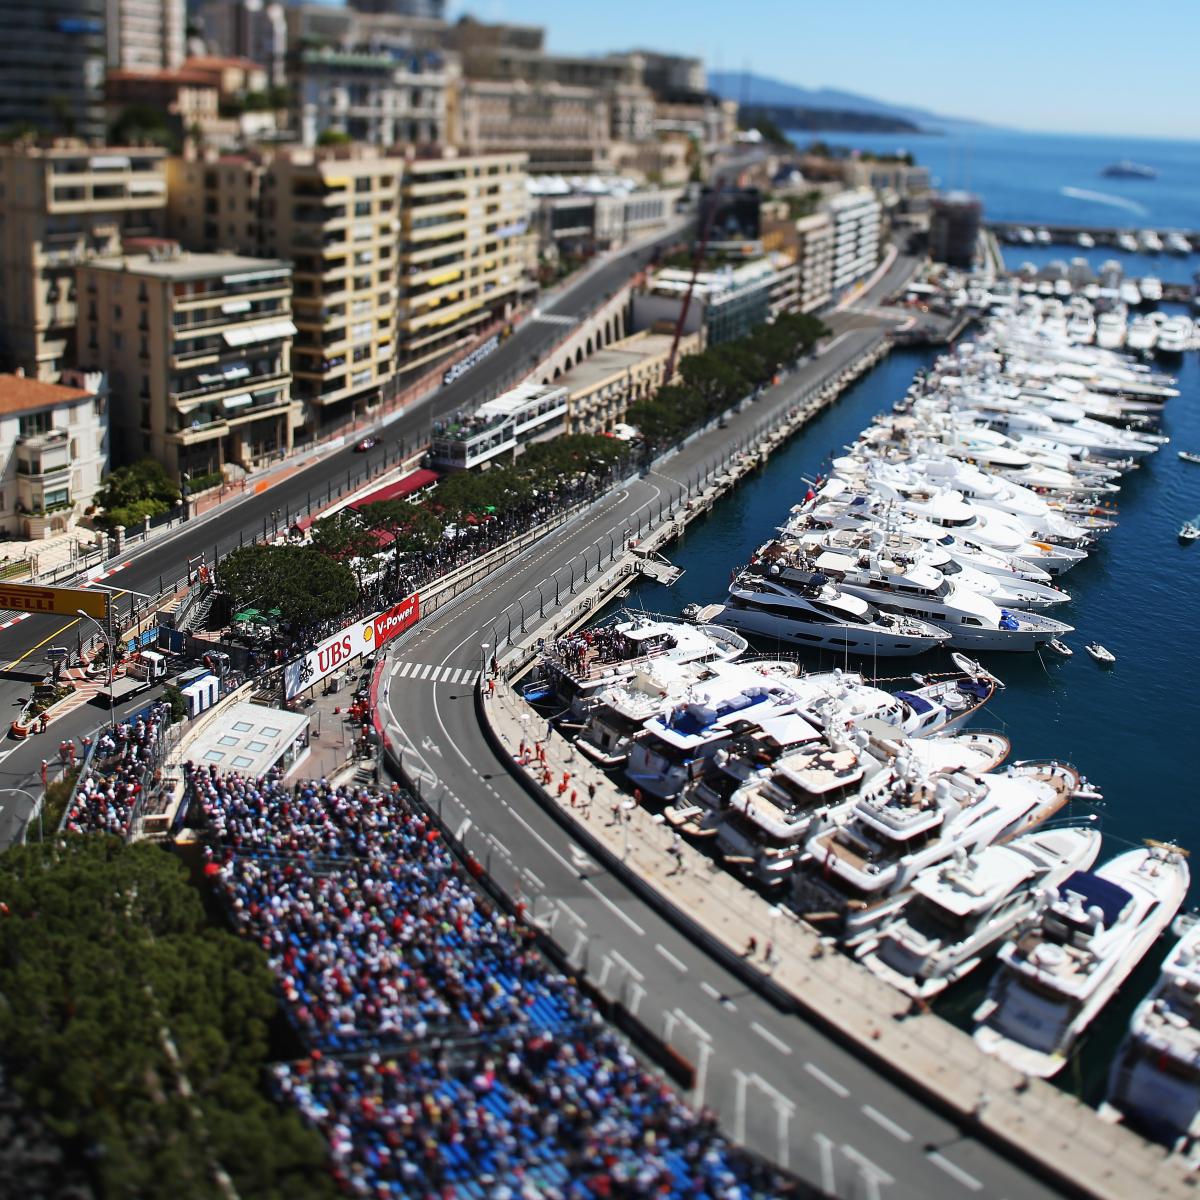 F1 Monaco GP